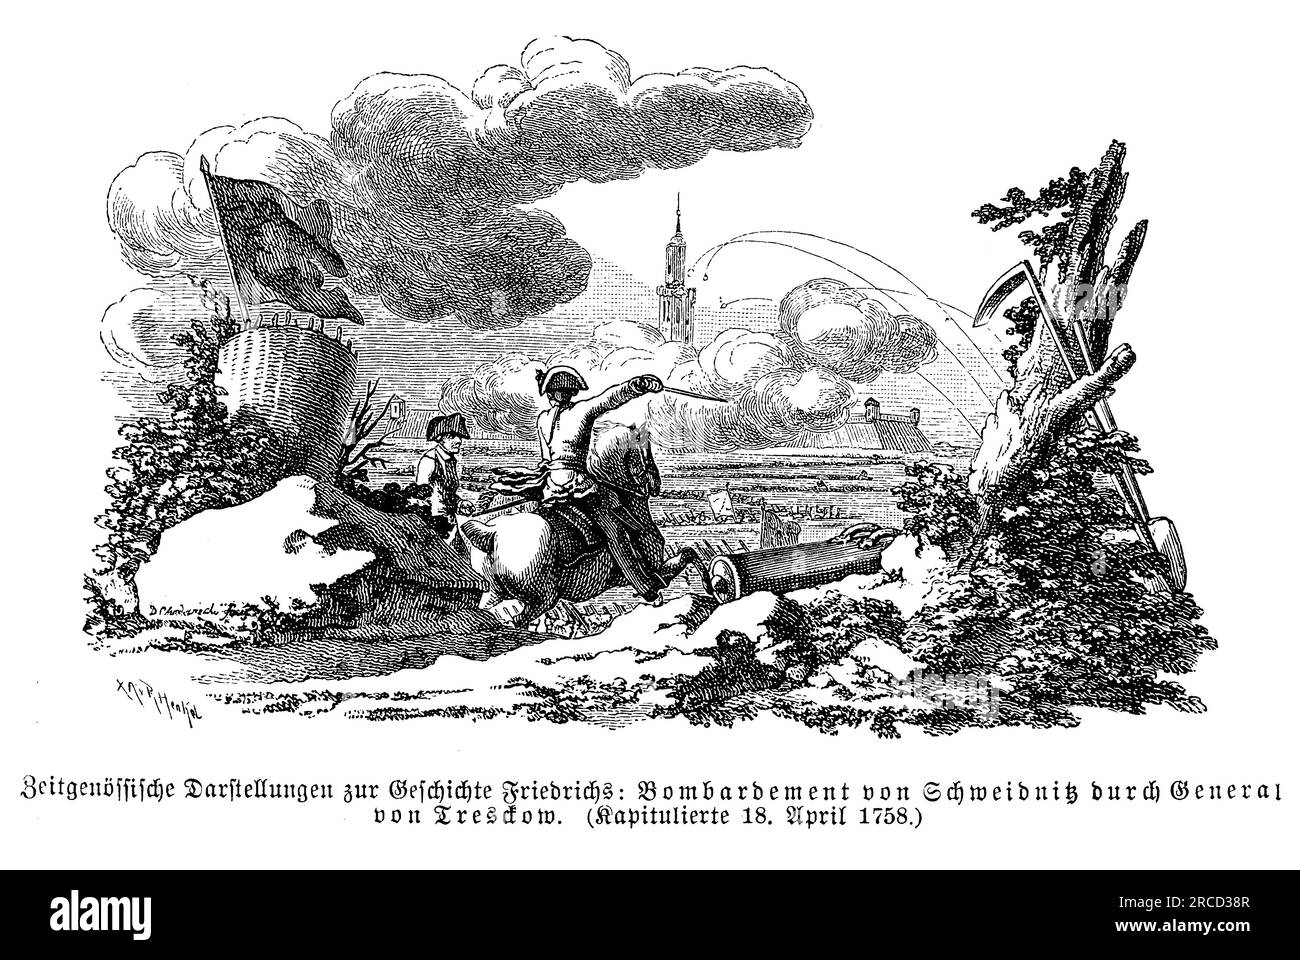 Bombardeo y asedio de la ciudad de Schweidnitz de las tropas prusianas de Federico el Grande bajo el liderazgo del general von Tresckow Foto de stock